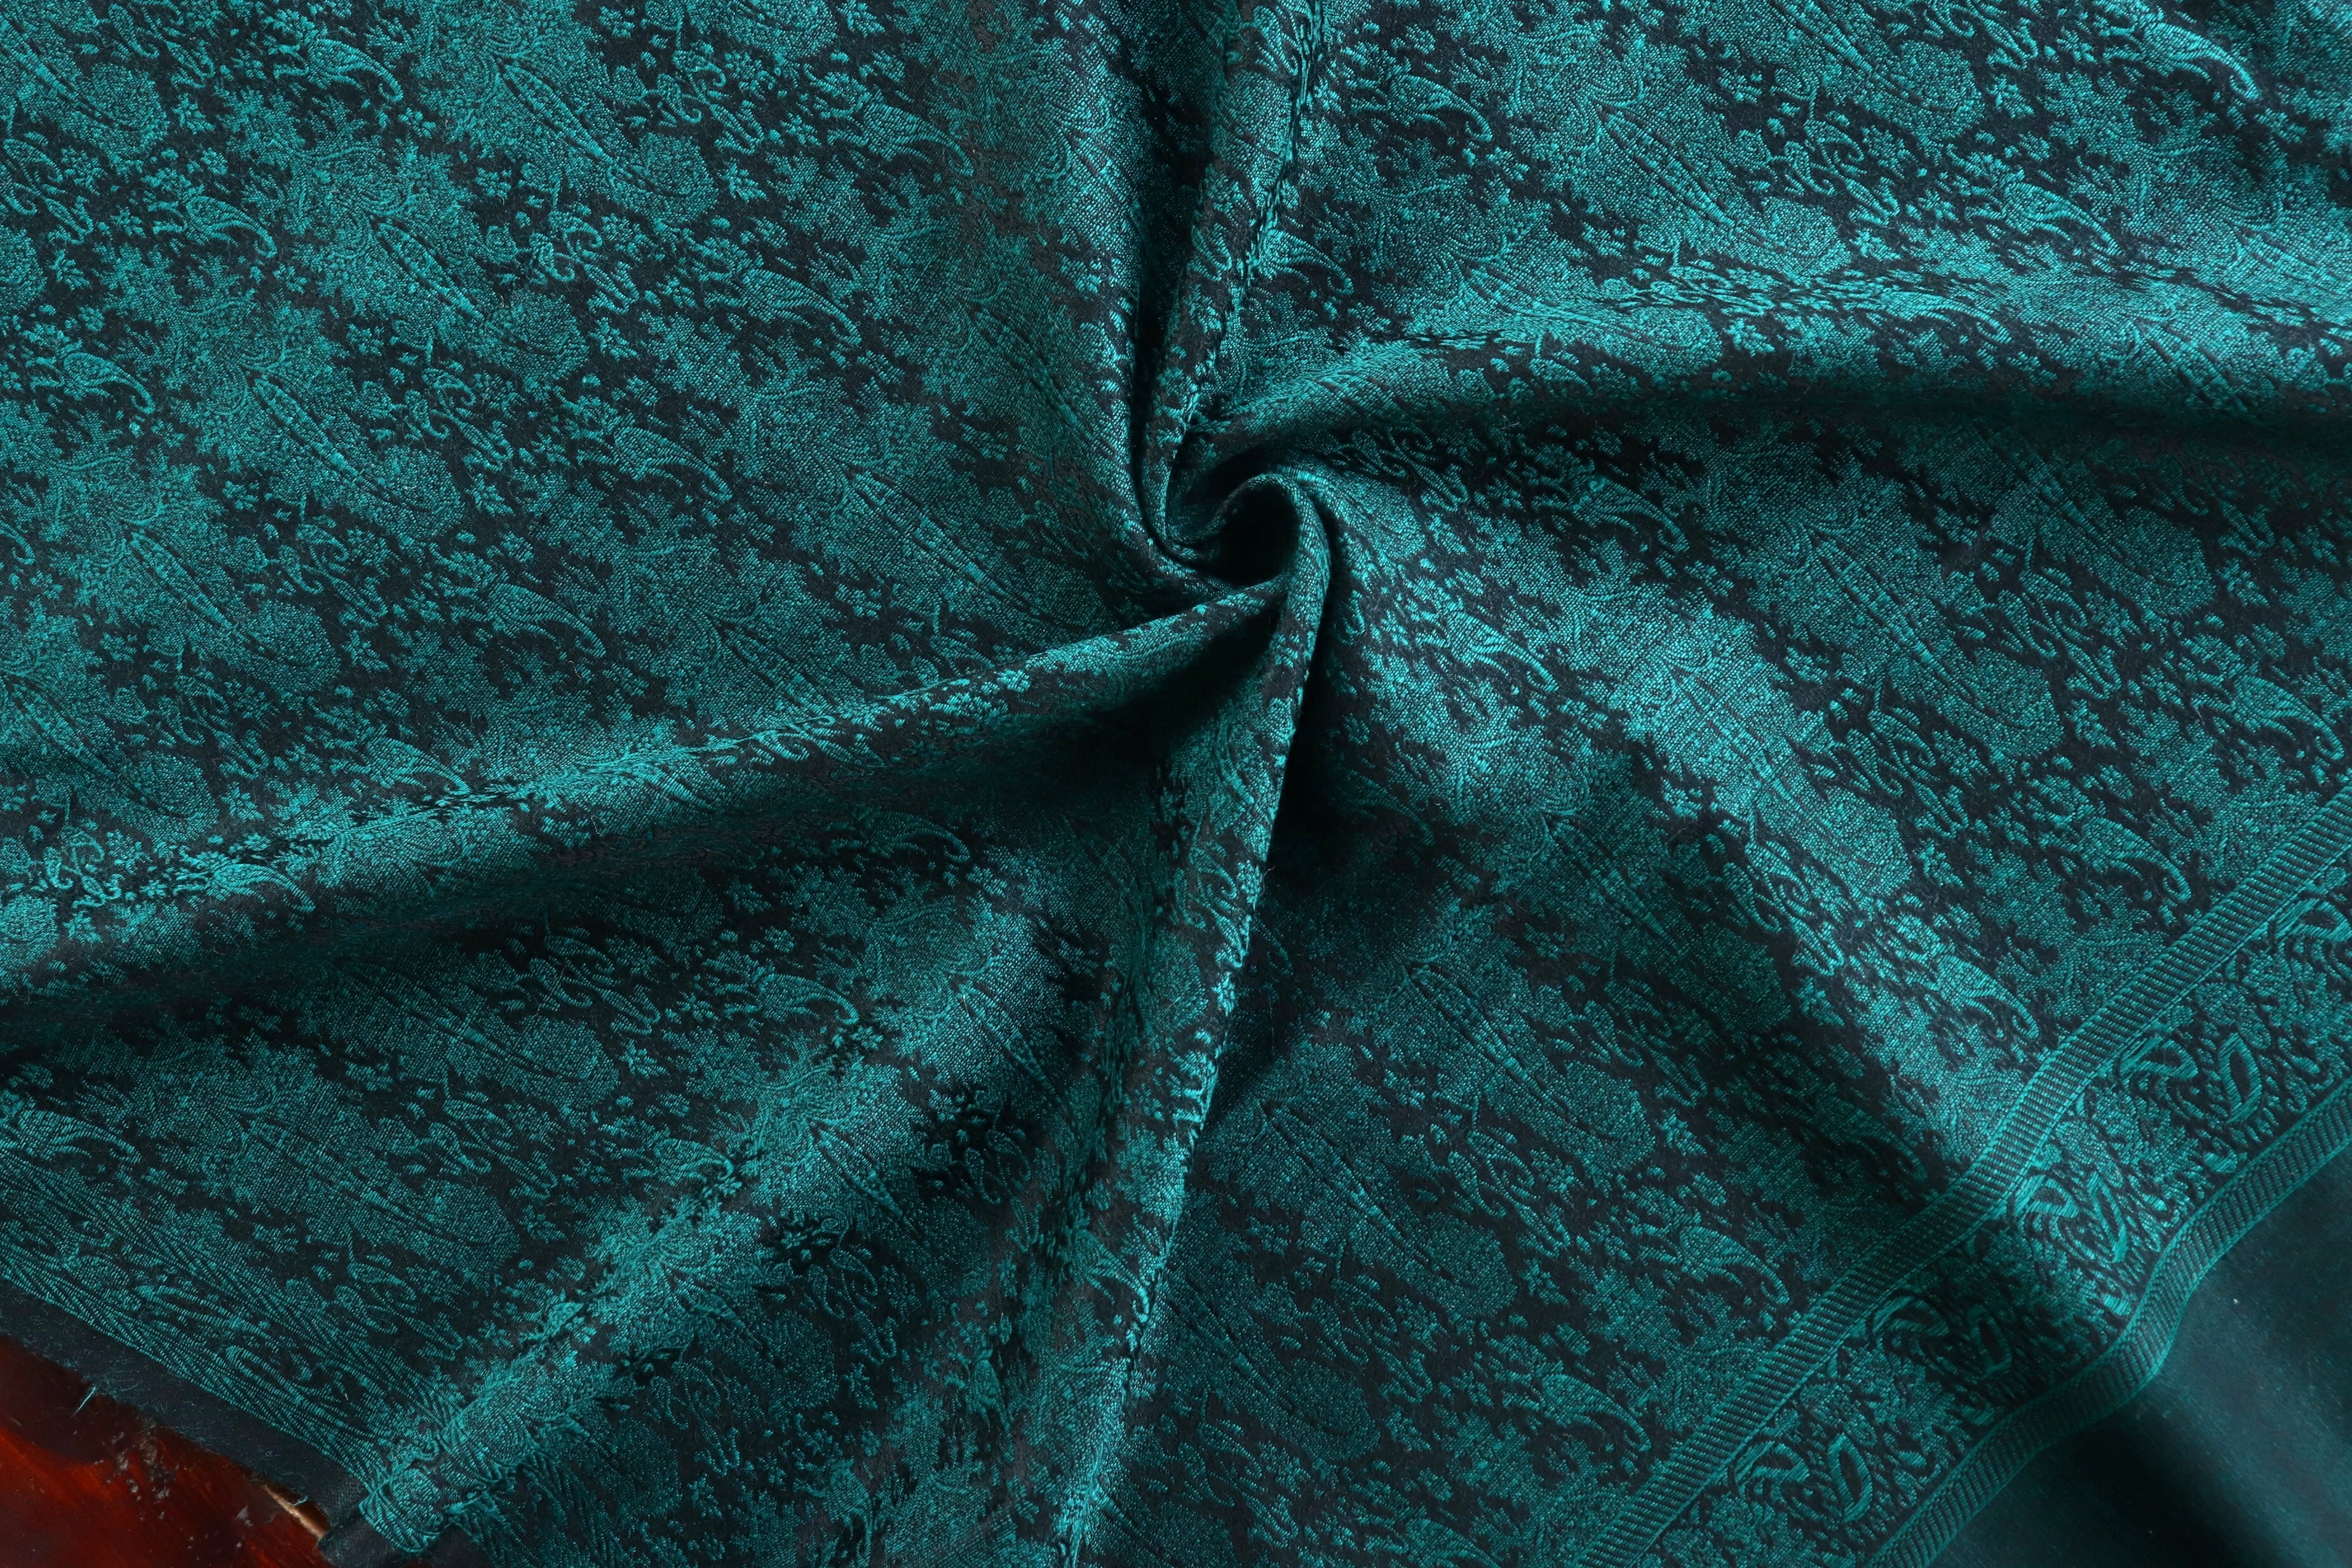 Green Pure Silk Handloom Banarasi Shawl